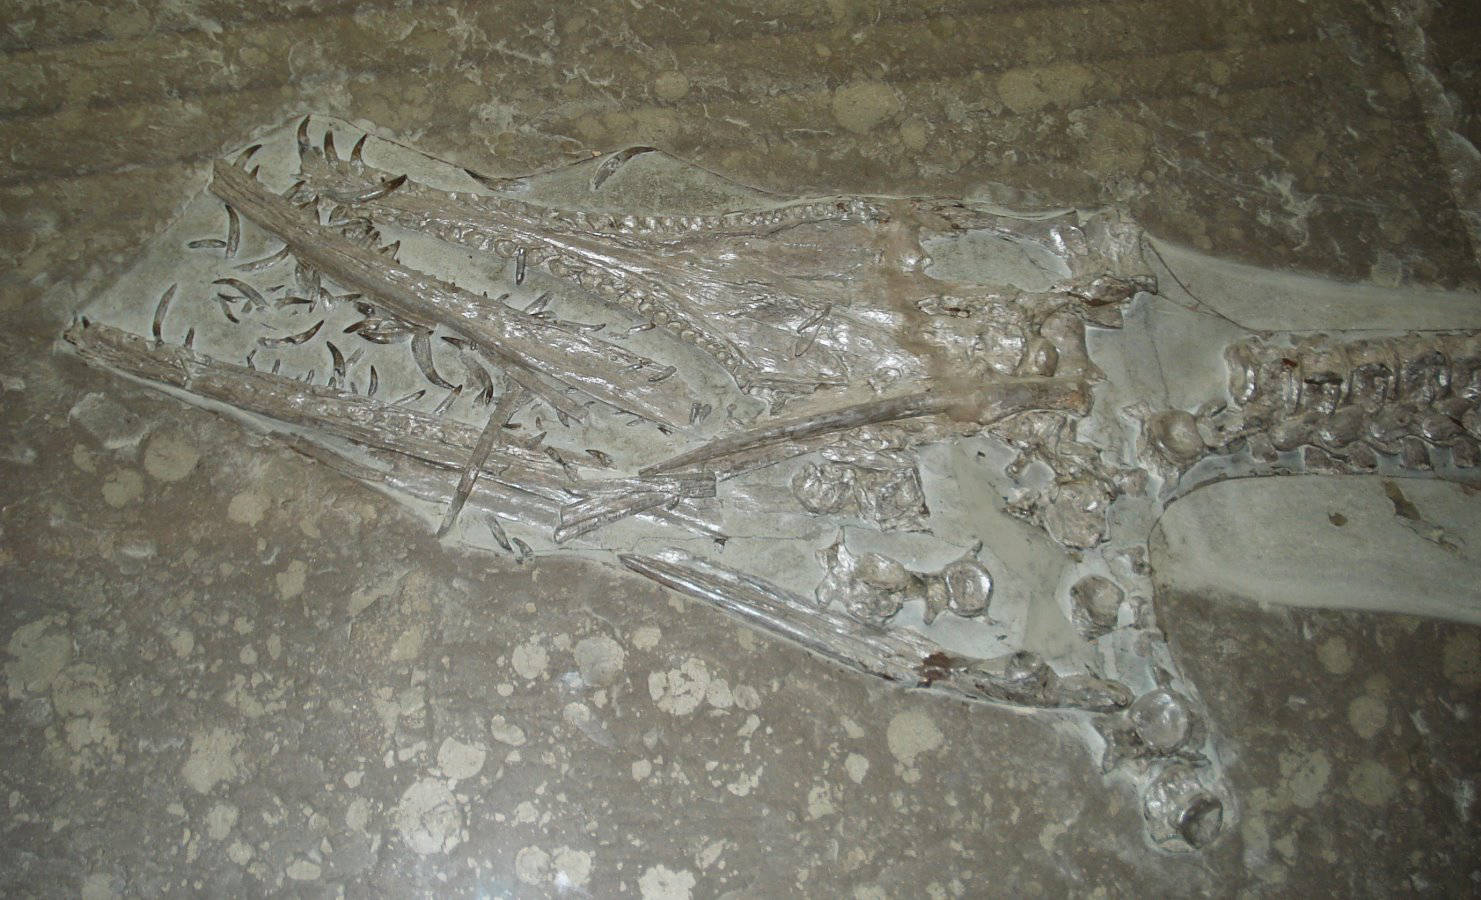 Hauffiosaurus zanoni